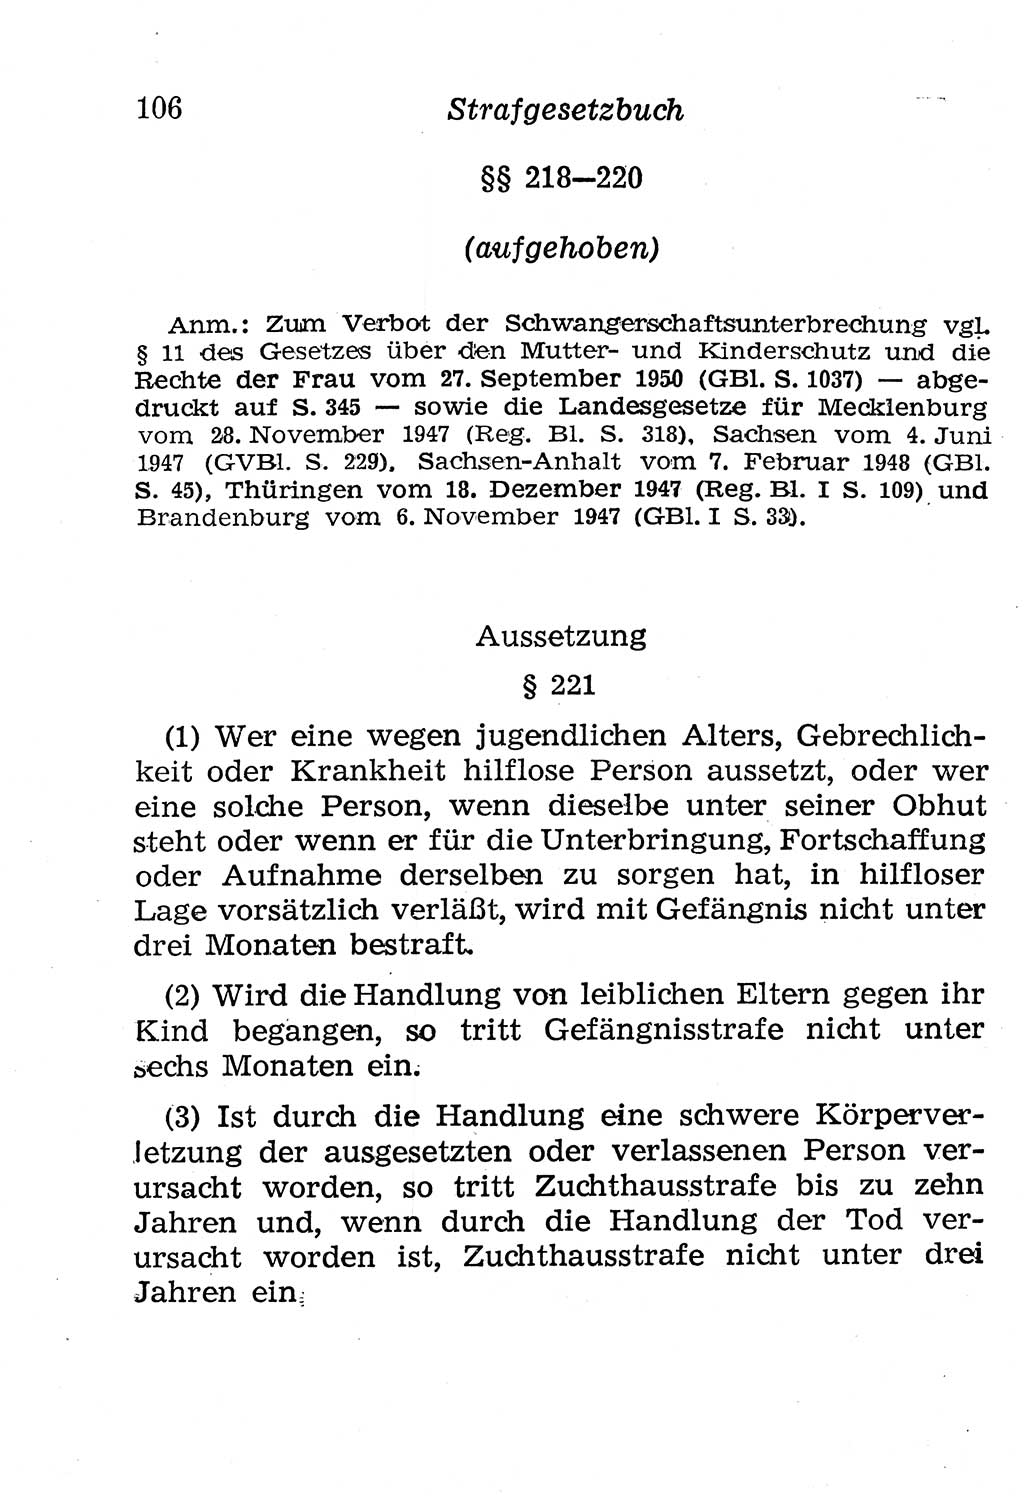 Strafgesetzbuch (StGB) und andere Strafgesetze [Deutsche Demokratische Republik (DDR)] 1958, Seite 106 (StGB Strafges. DDR 1958, S. 106)